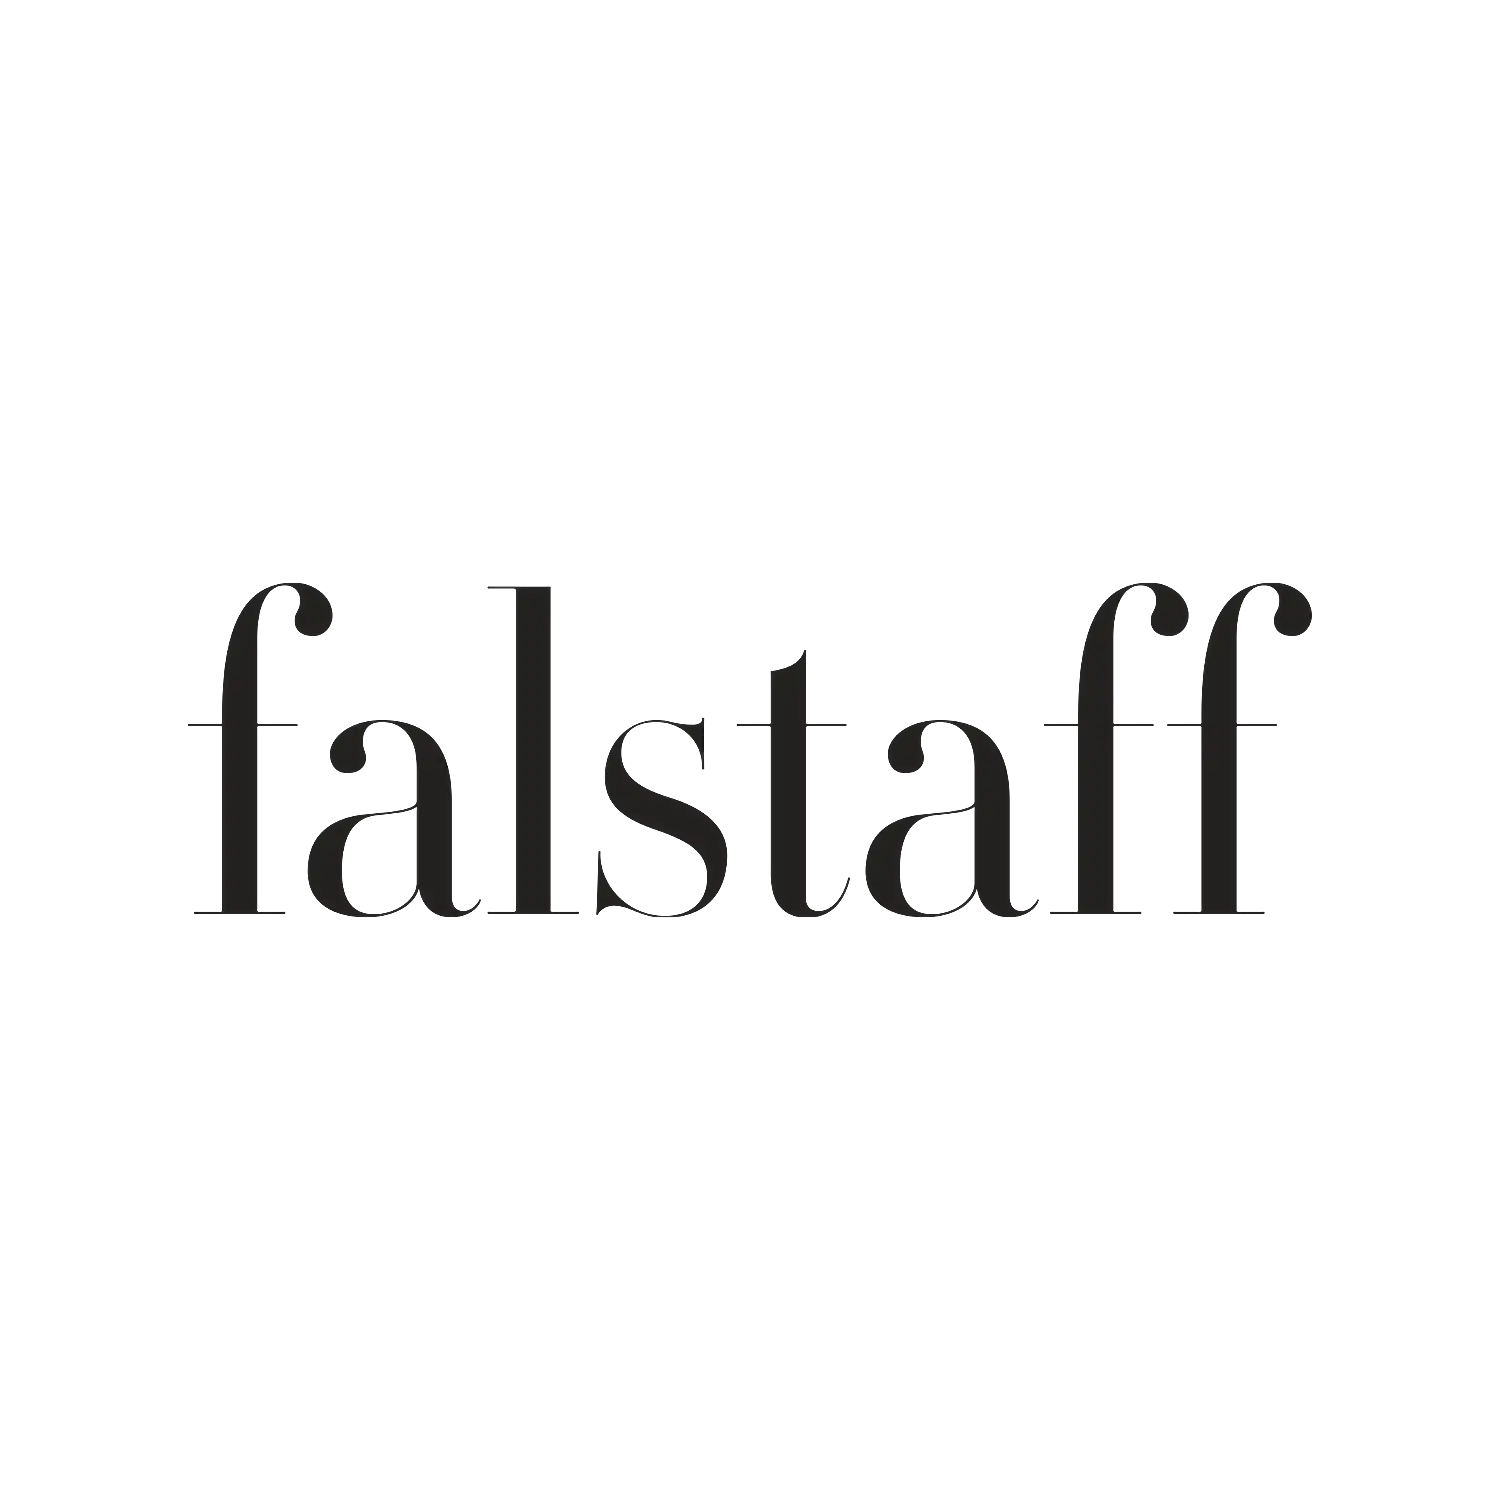 falstaff, premiul falstaff pentru vin alb 2020